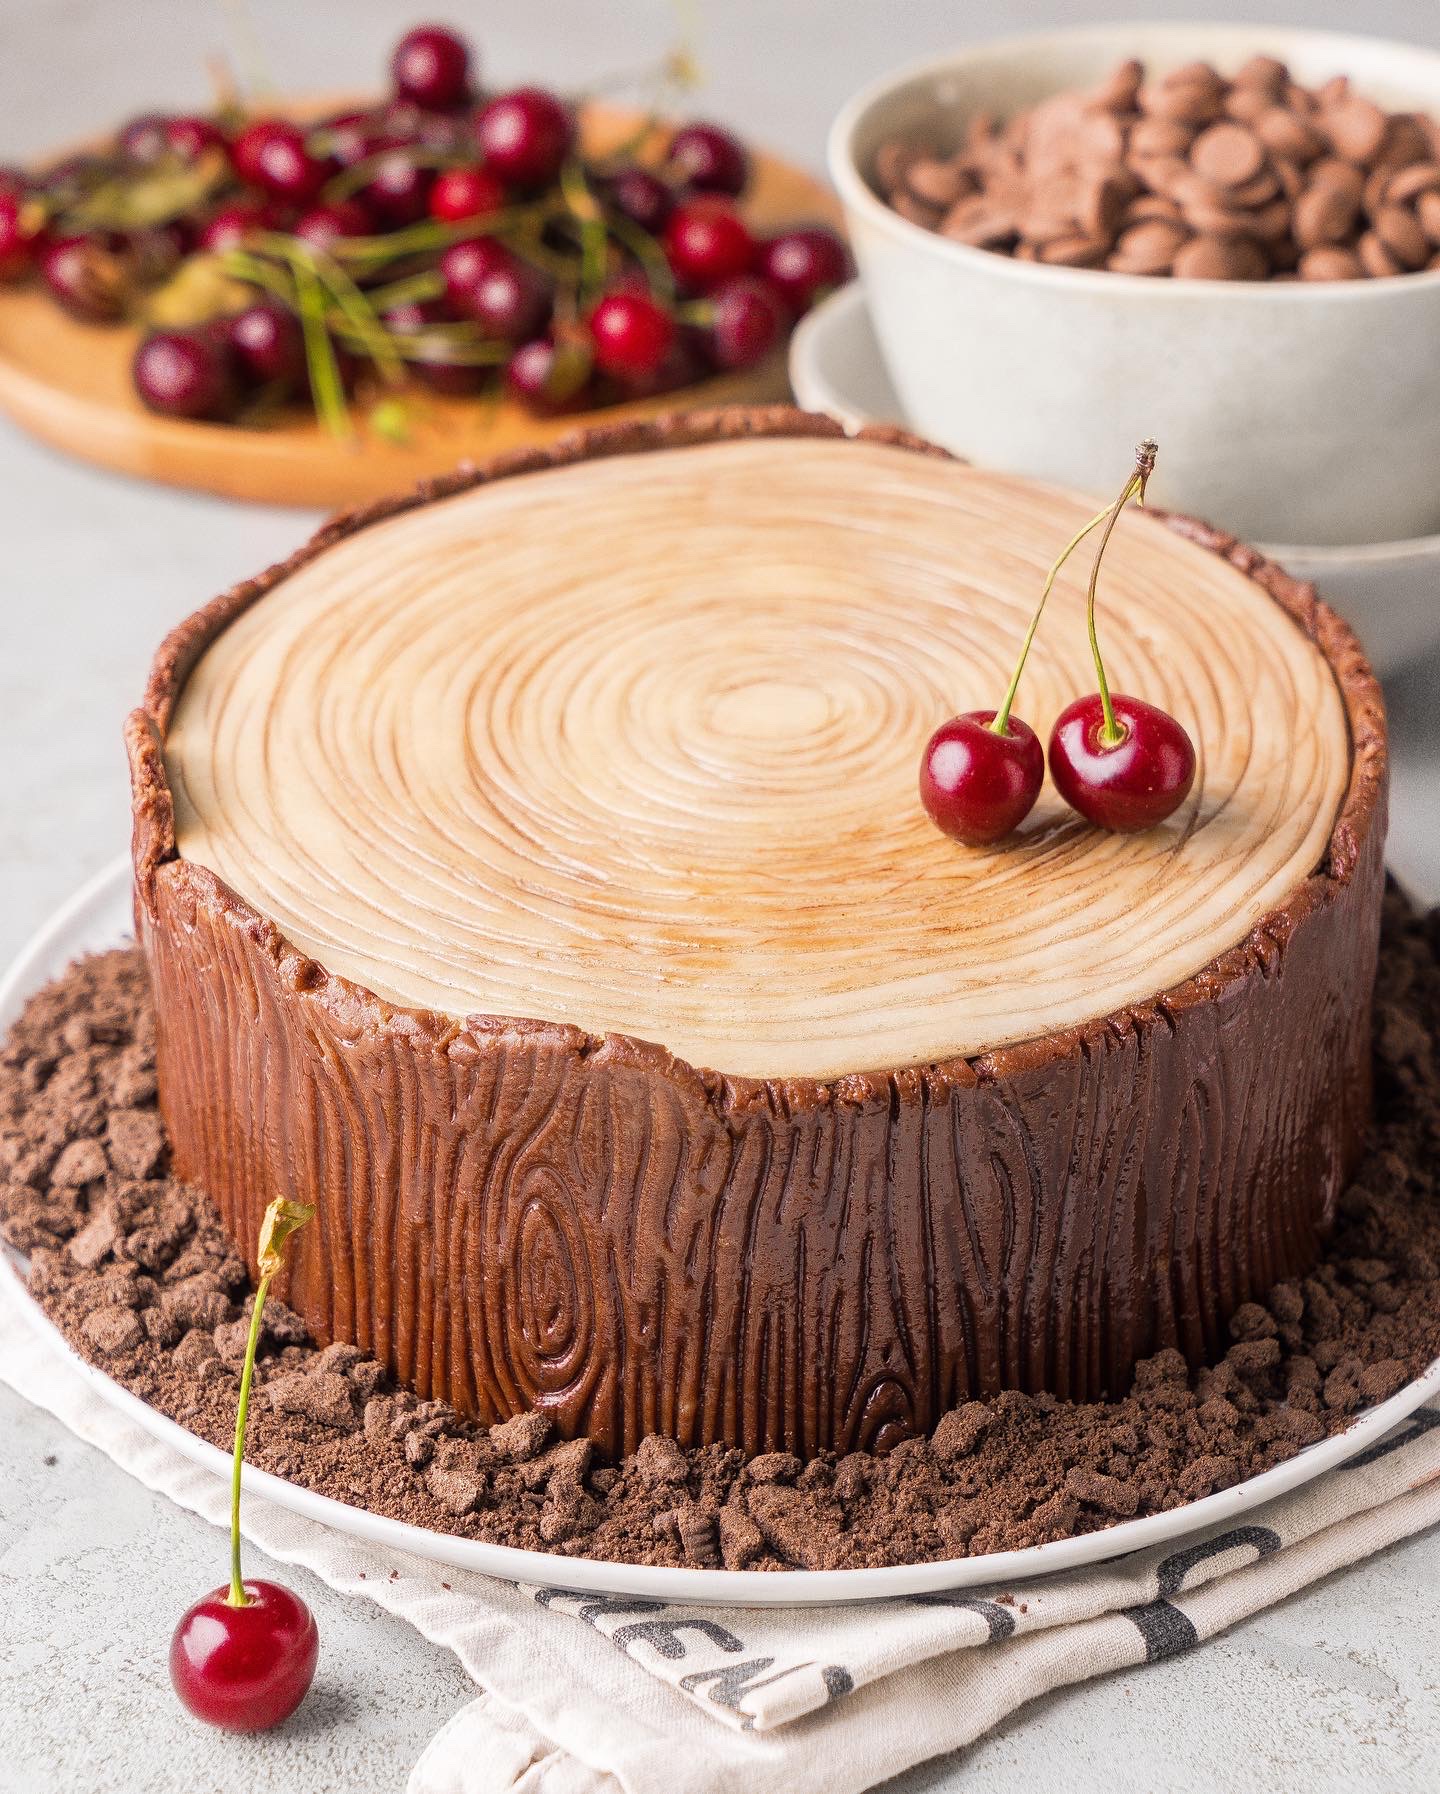 Бисквитный торт “Вишня в шоколаде”